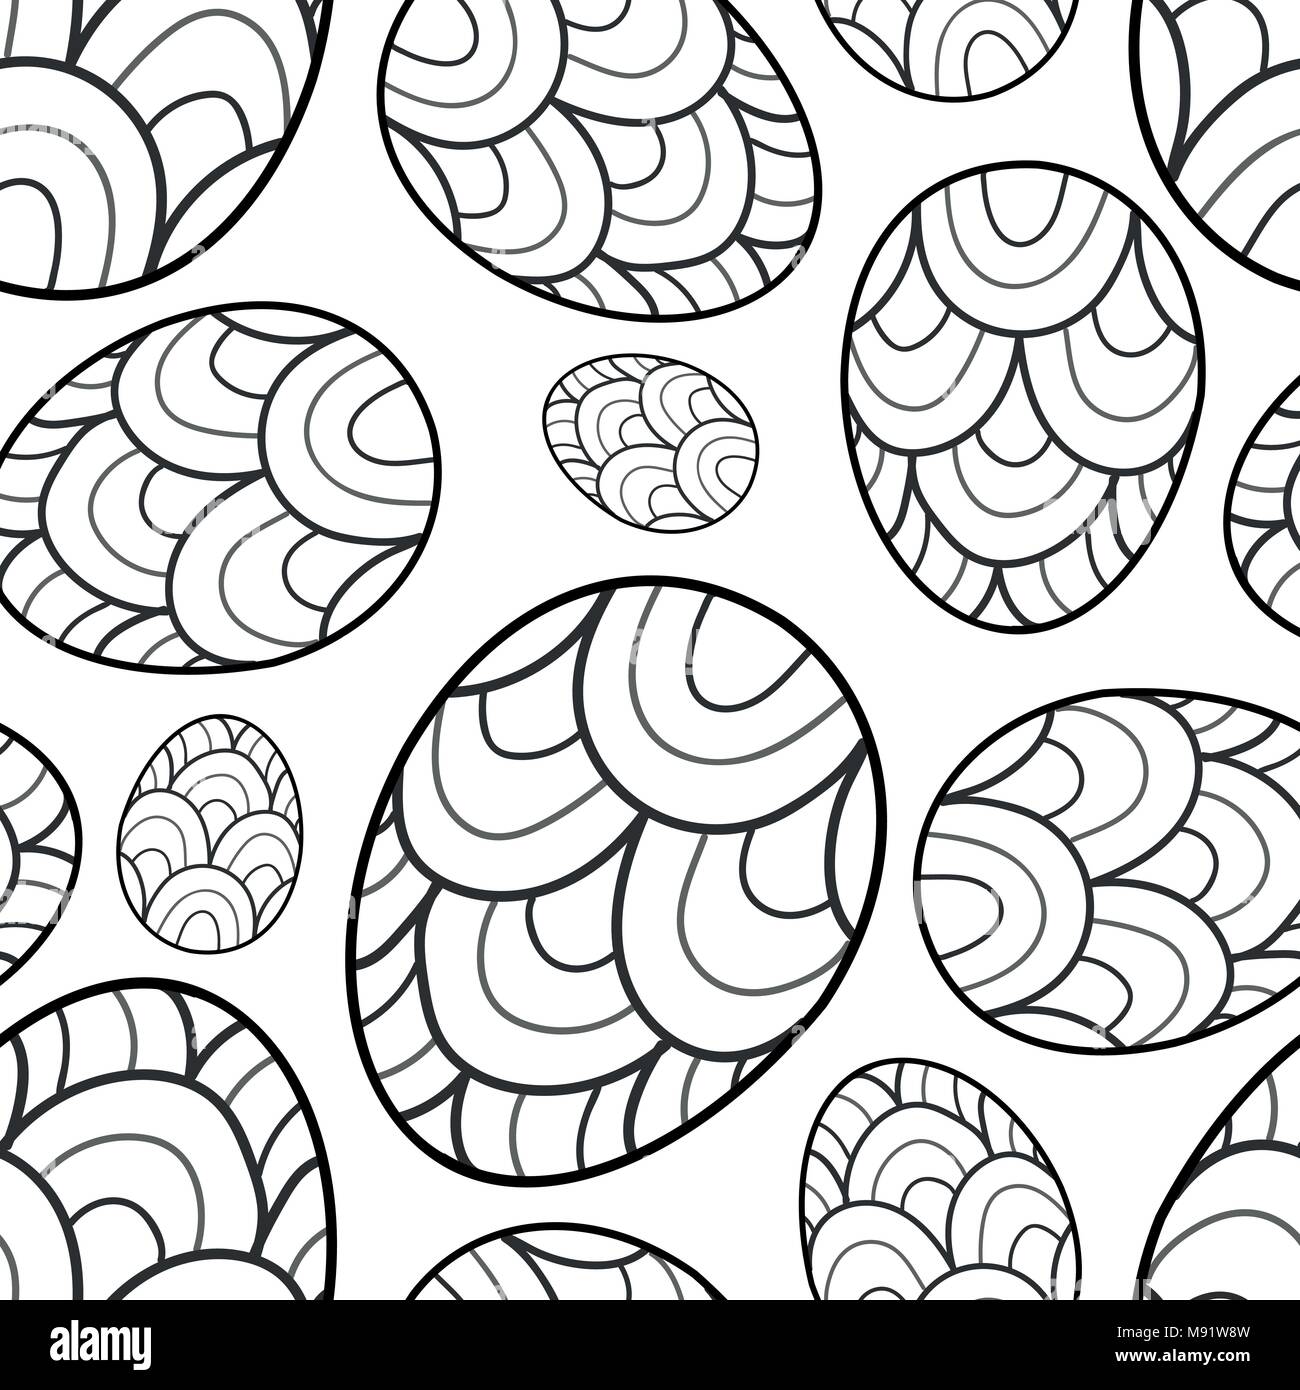 Easter eggs in black outline random on white background. Cute hand drawn seamless pattern design for Easter festival in vector illustration. Stock Vector